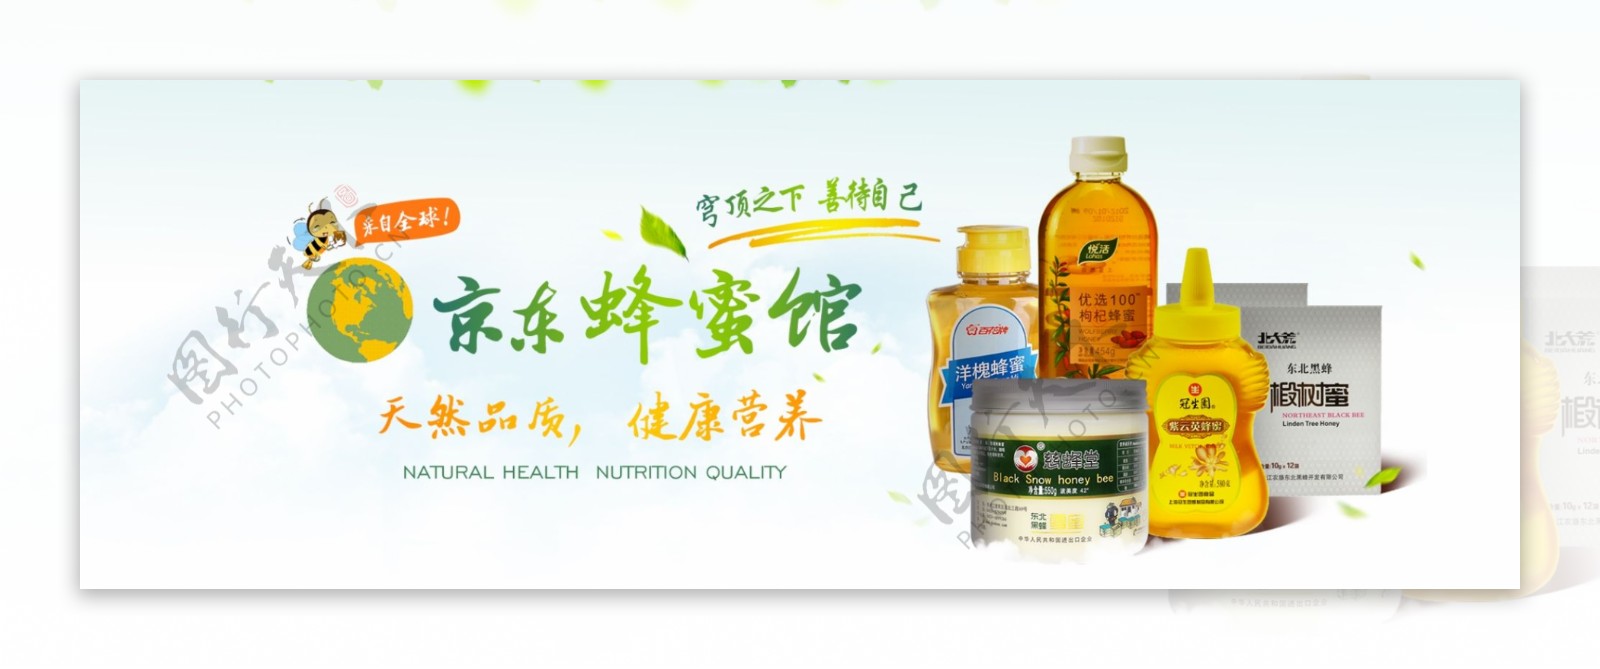 京东蜂蜜产品宣传广告图图片